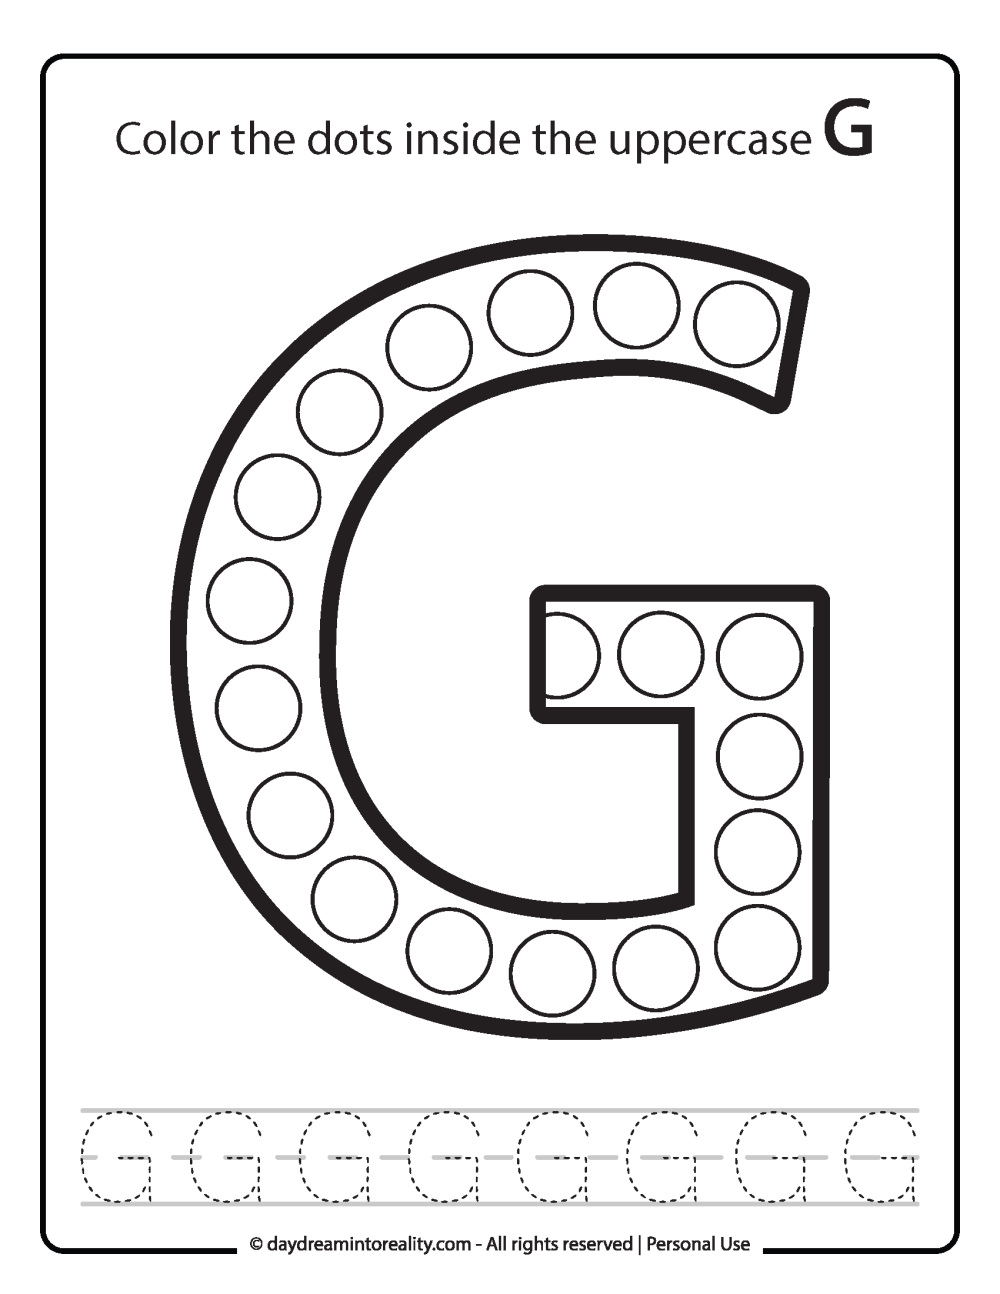 Uppercase "G" Dot Marker Worksheet Free Printable activity for kids (preschool, kindergarten)